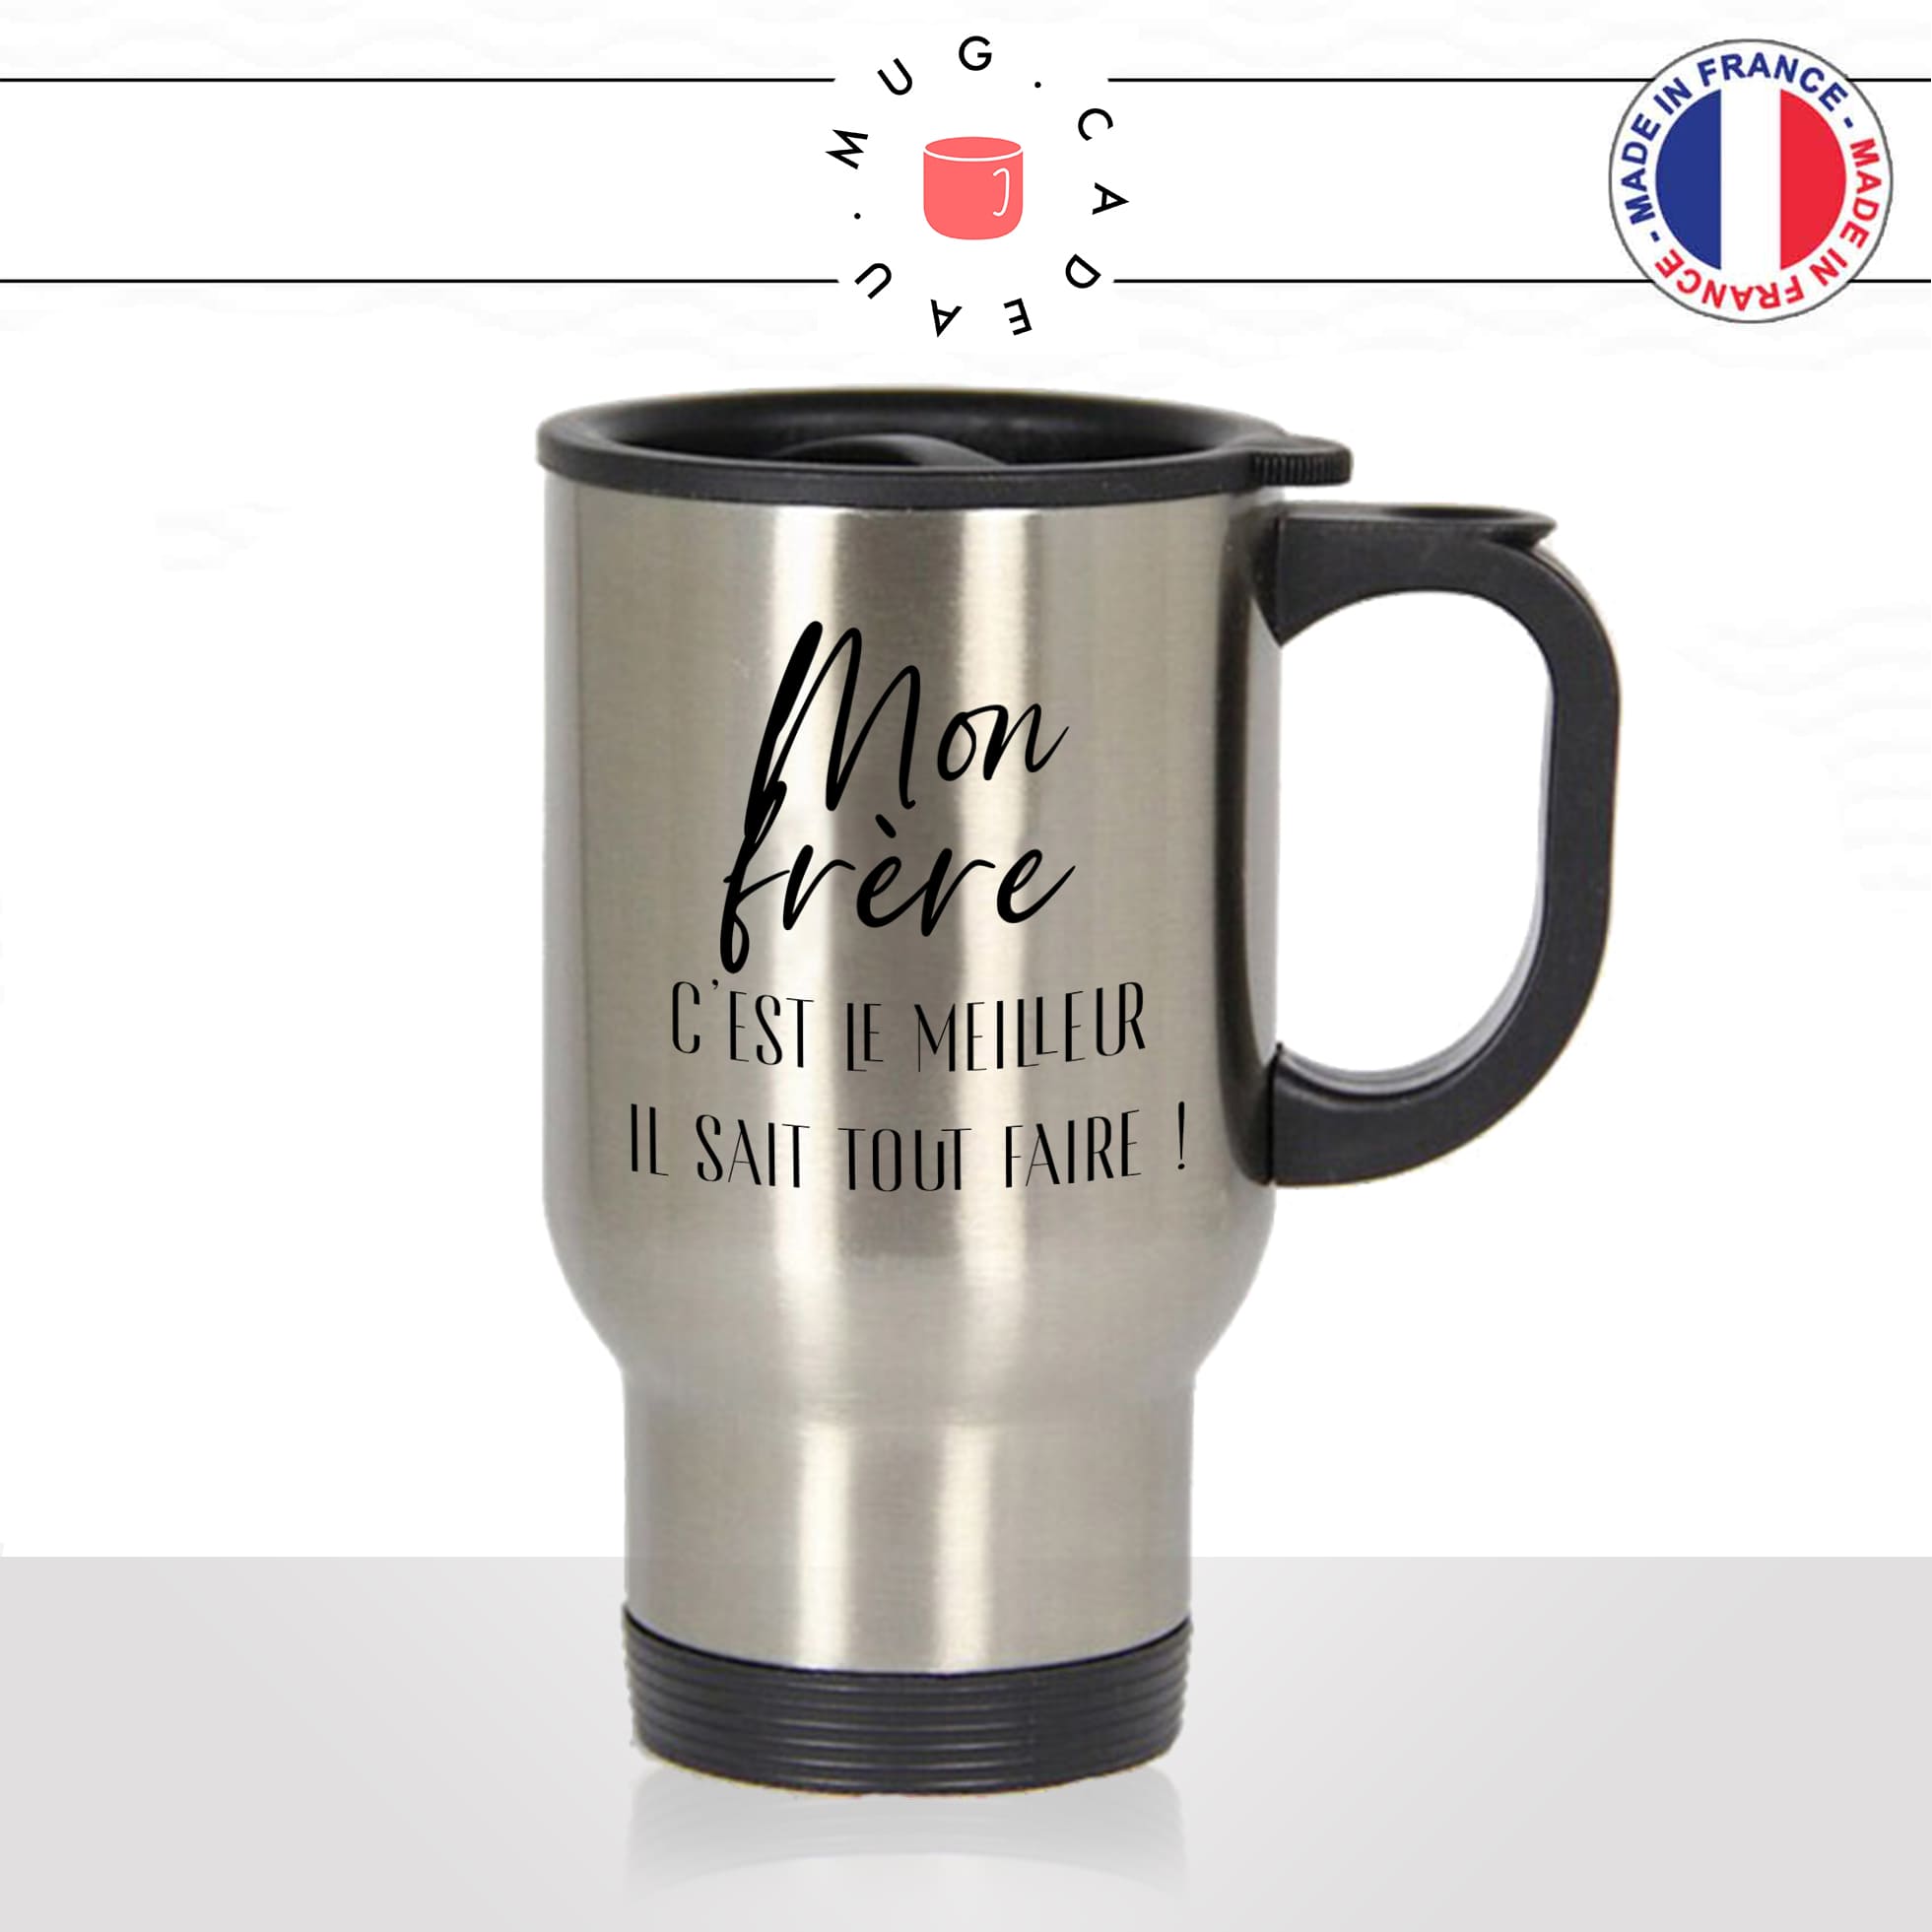 mug-tasse-thermos-gourde-isolant-cadeau-mon-frere-le-meilleur-il-sait-tout-faire-grand-frère-homme-café-thé-personnalisé-personnalisable2